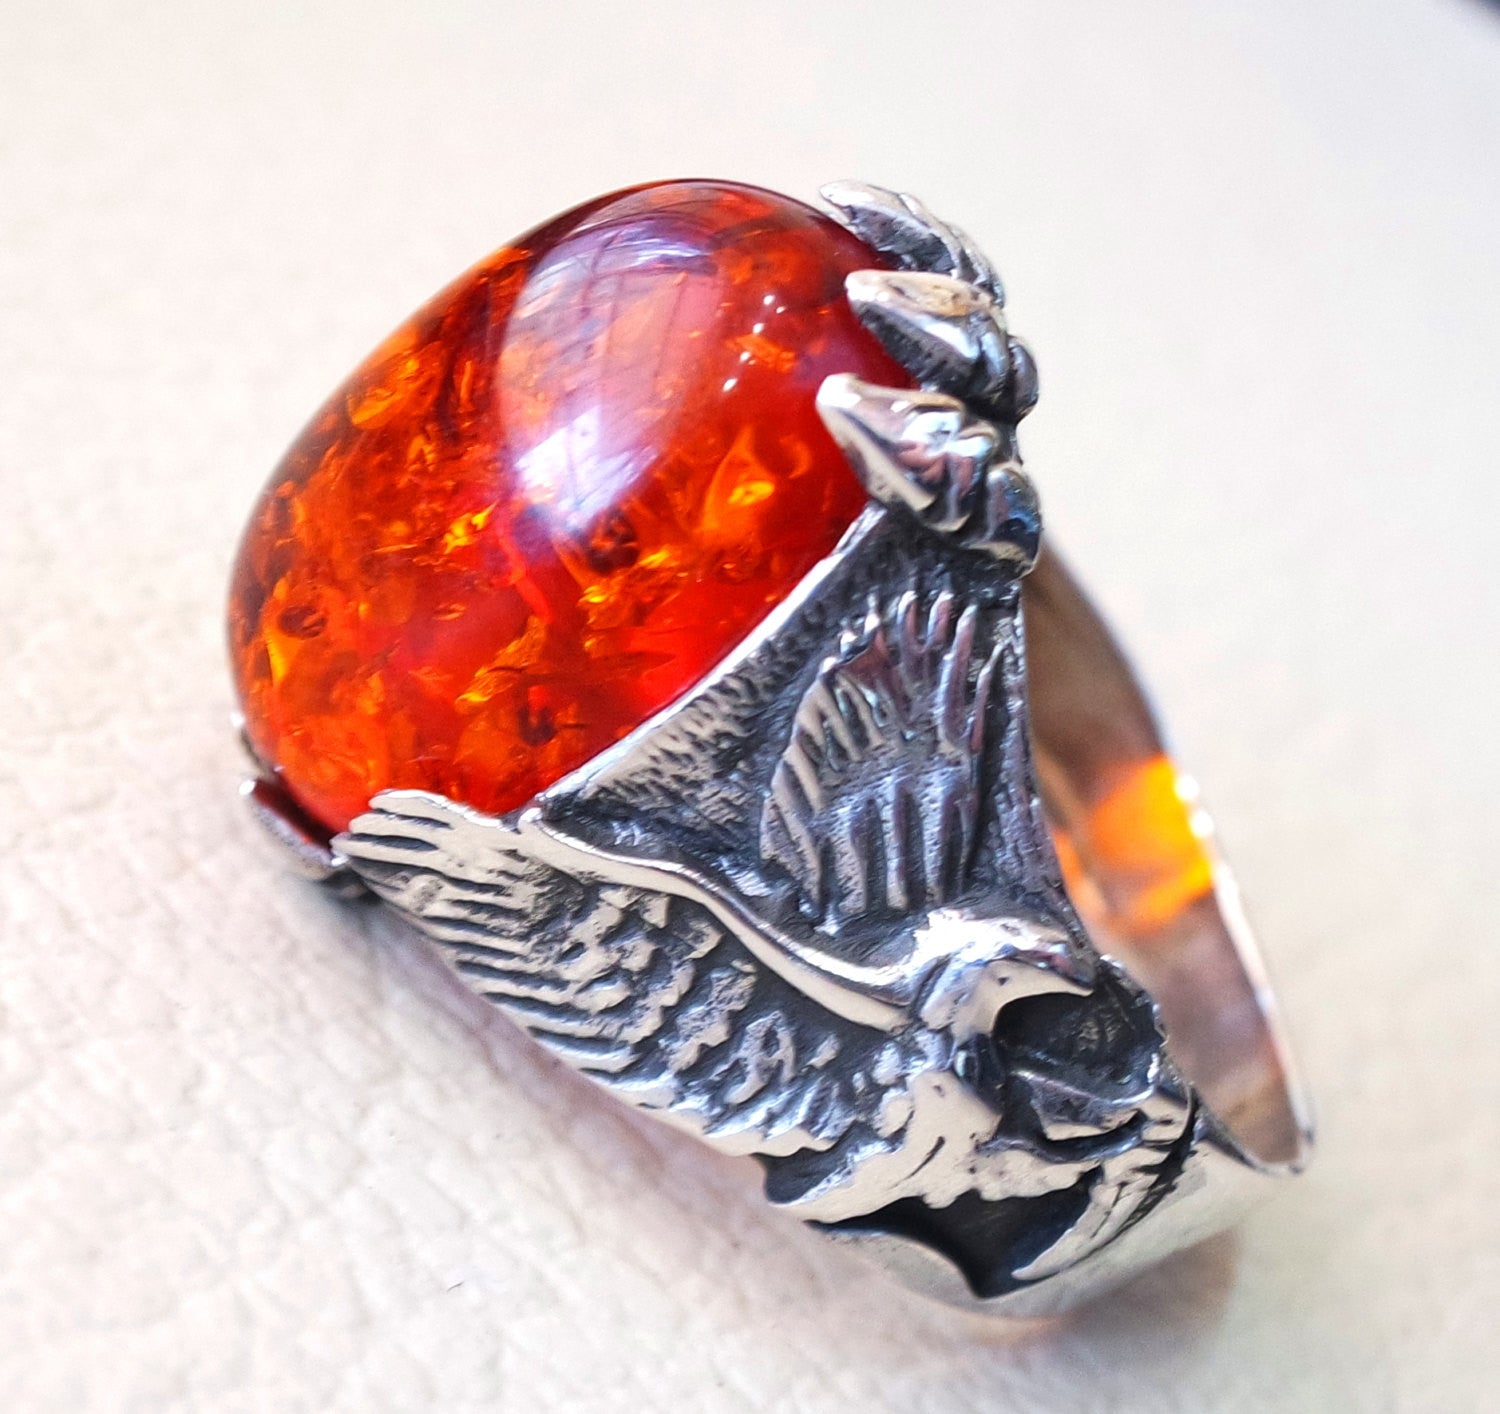 Baltic Amber haute qualité imitation Stone identique à véritable Eagle Man Ring sterling silver 925 toutes les tailles expédition rapide bijoux animaux